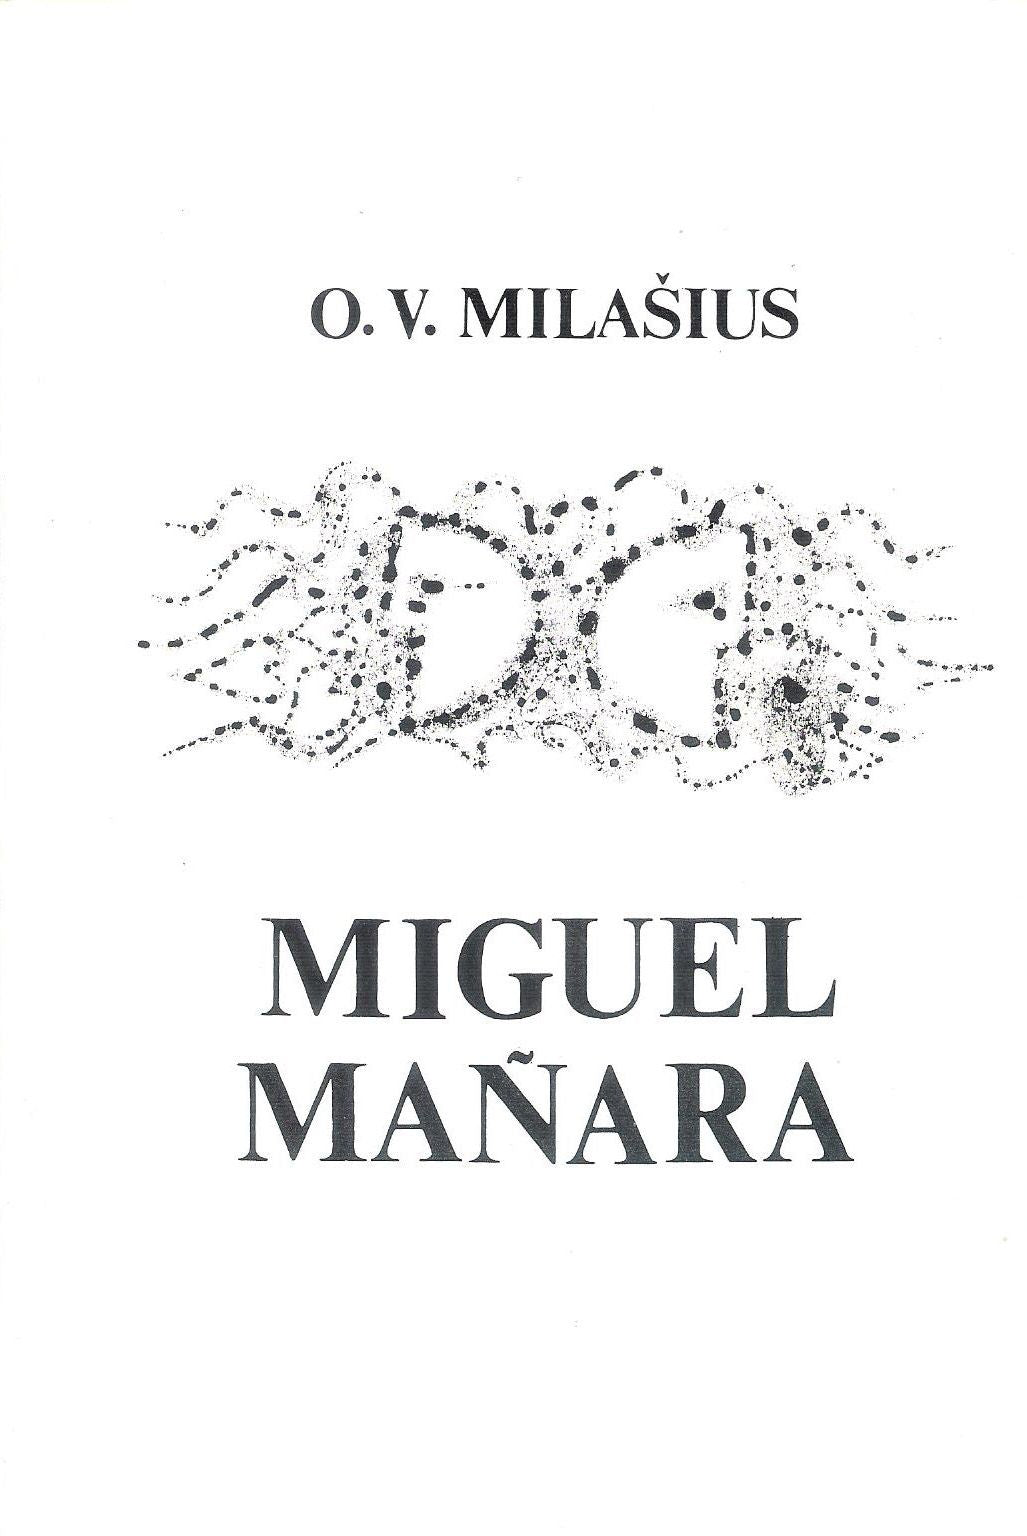 O. V. Milašius - Miguel Mañara, 1977, Chicago